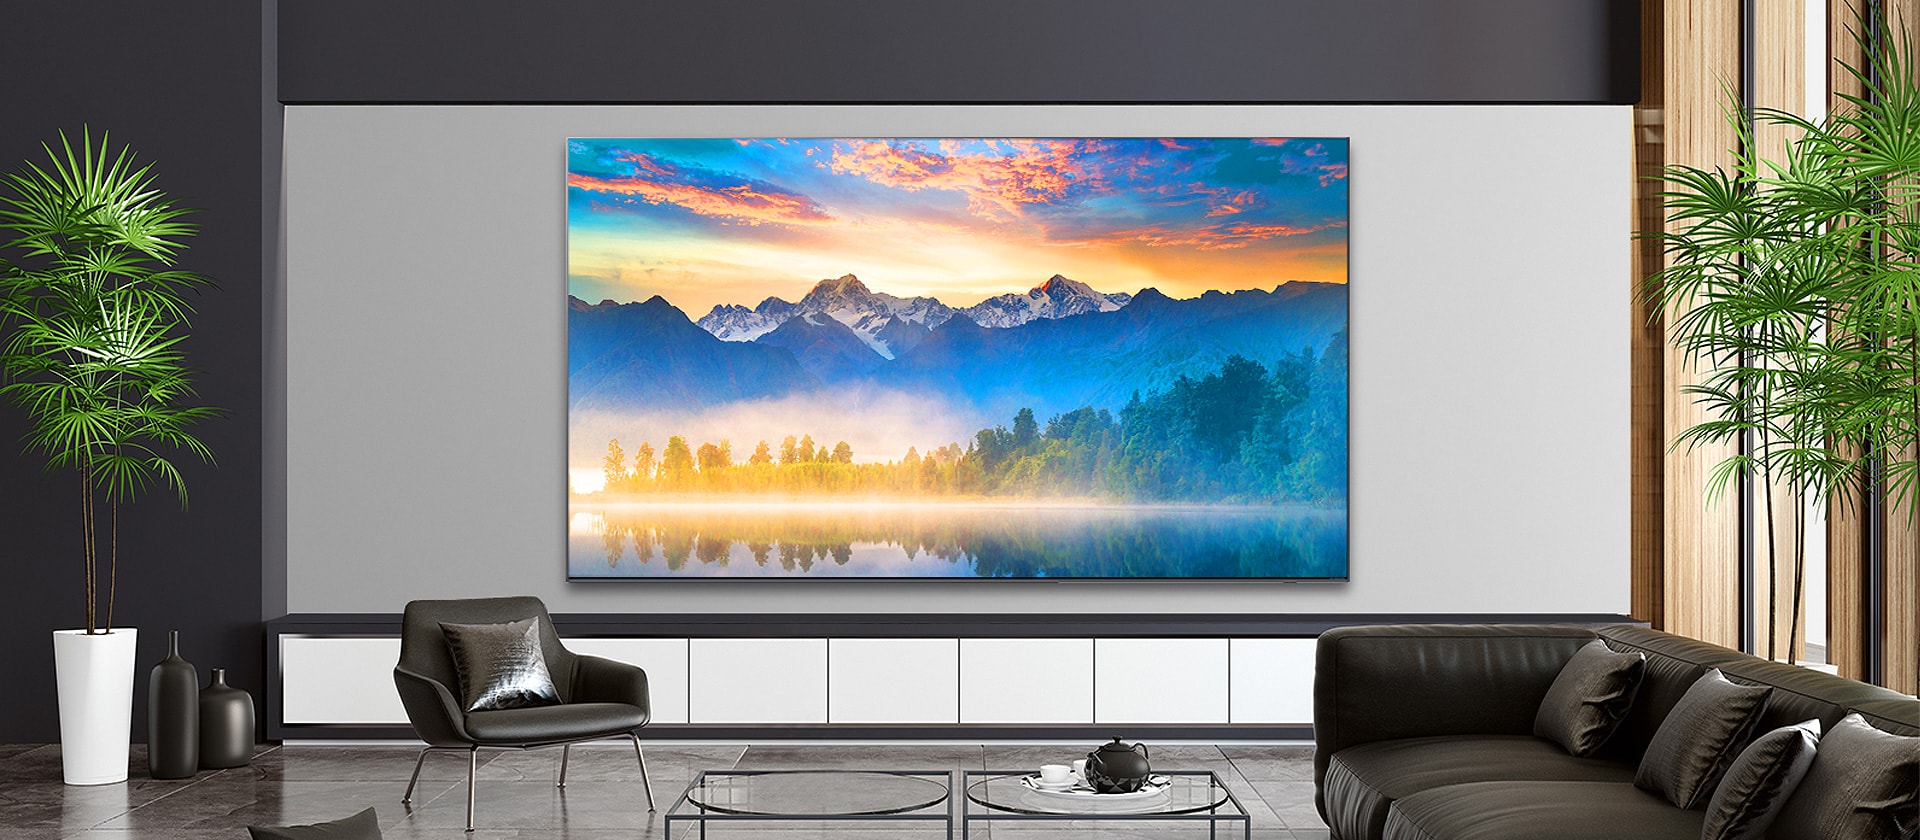 Một phòng khách với màn hình TV treo tường hiển thị khung cảnh thiên nhiên.